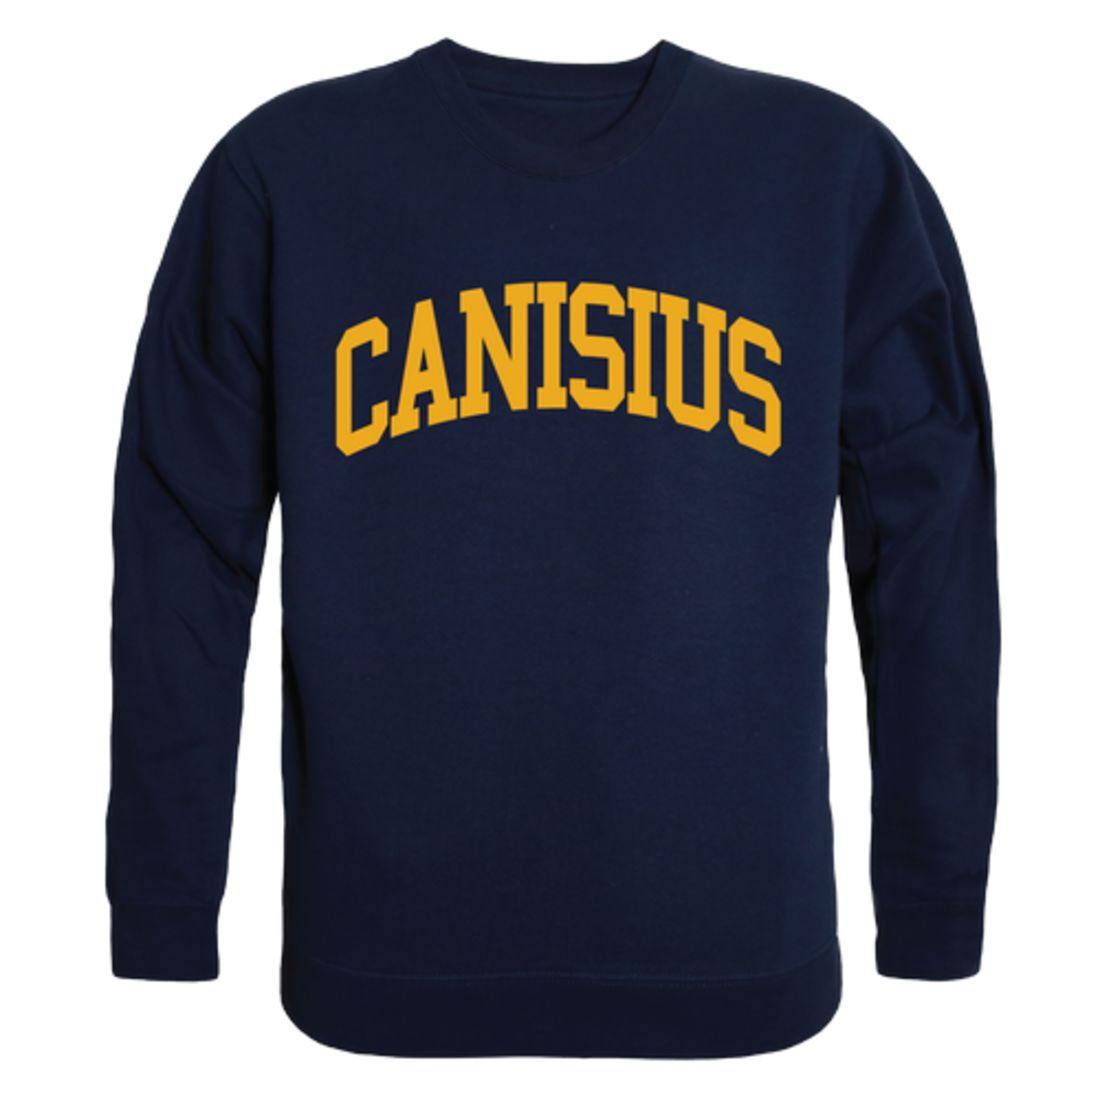 Canisius College Golden Griffins Arch Crewneck Pullover Sweatshirt Sweater Navy-Campus-Wardrobe